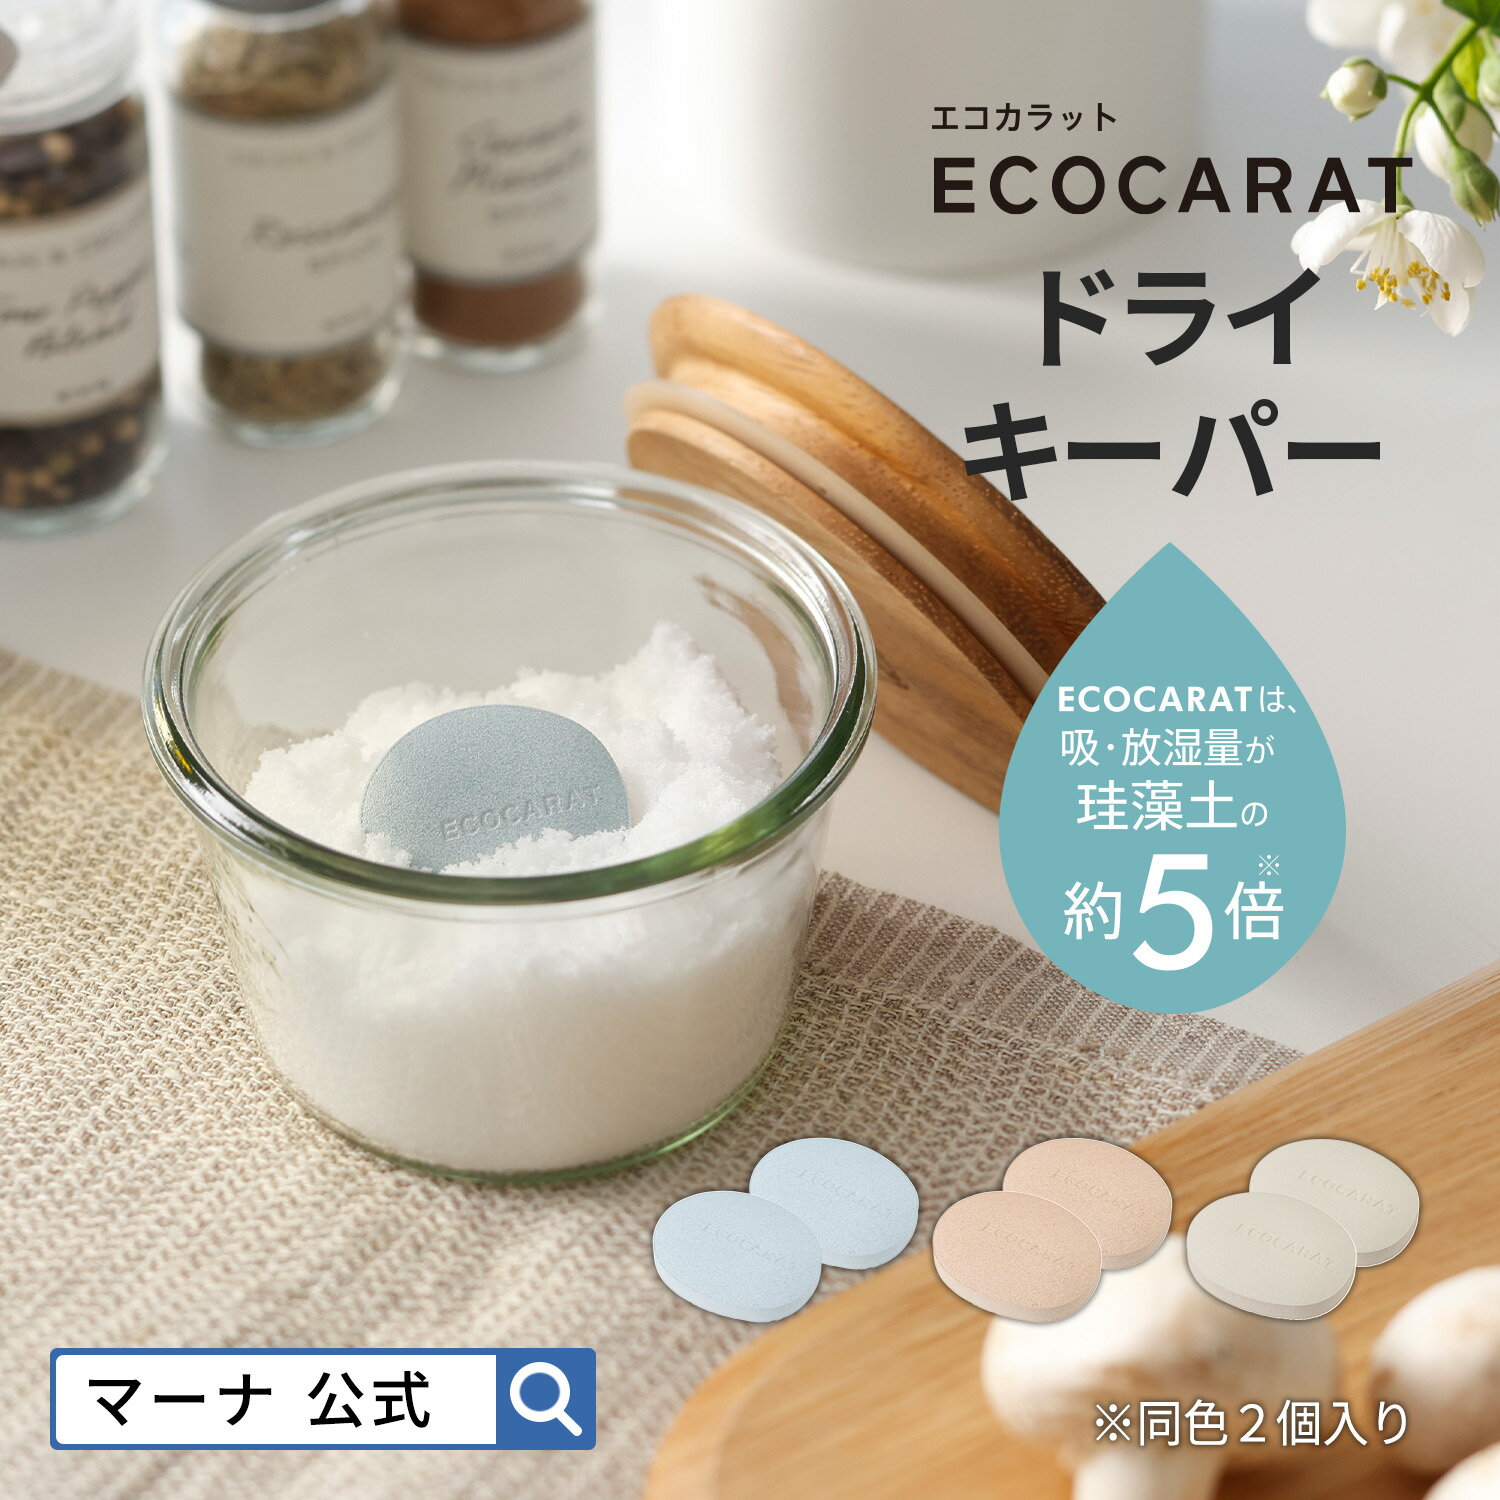 【マーナ公式】ECOCARAT エコカラット ドライキーパー K685 |塩・砂糖の容器内を調湿してさらさらに保ちます 塩 砂糖 乾燥剤 食品用 調湿材 国産 おしゃれ キッチン 便利グッズ LIXIL ブルー …